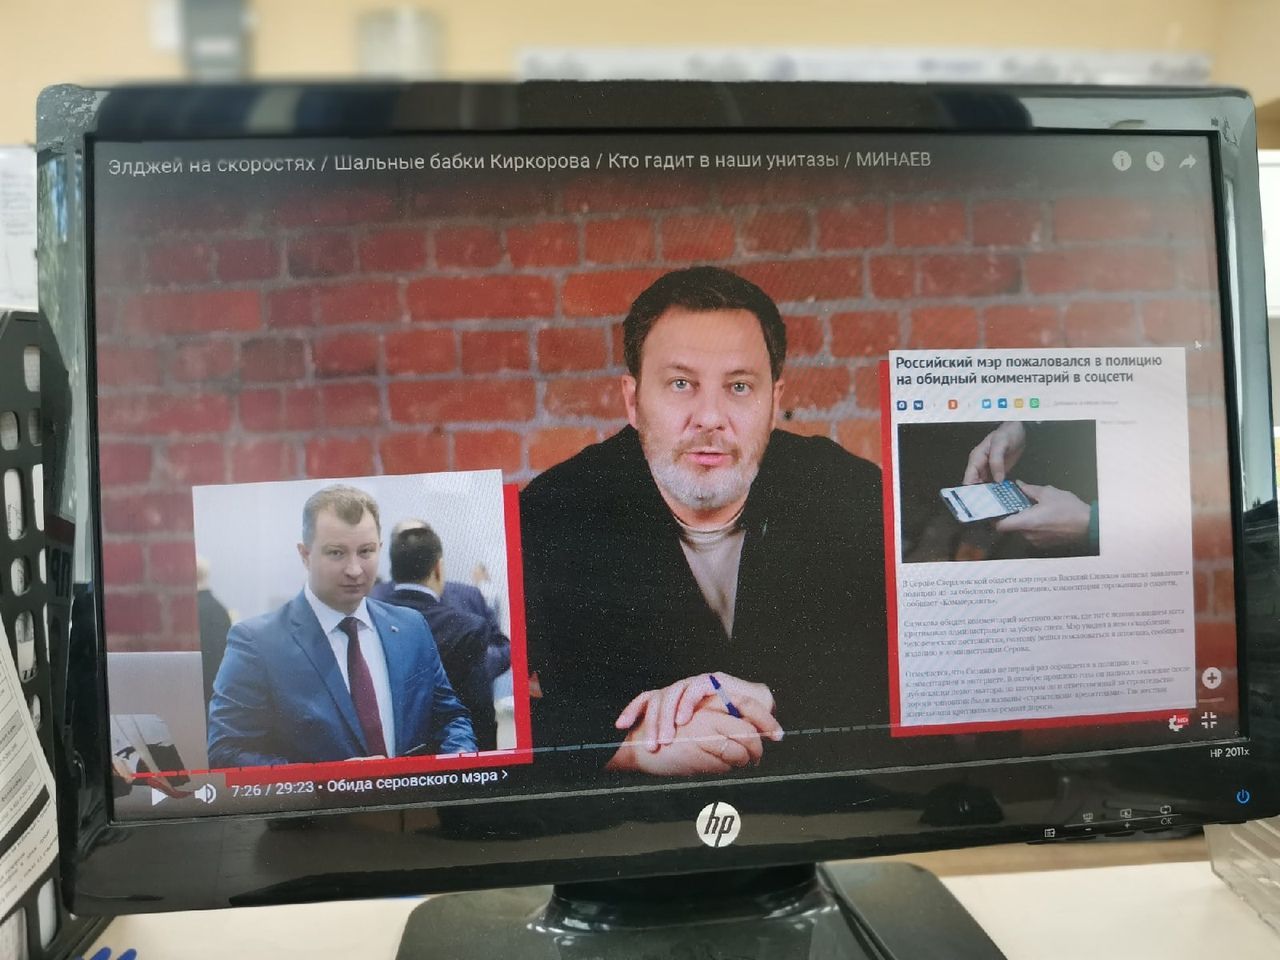 «Самый стильный мэр всея Руси» Василий Сизиков, обидевшийся на комментарии, попал в блог Сергея Минаева